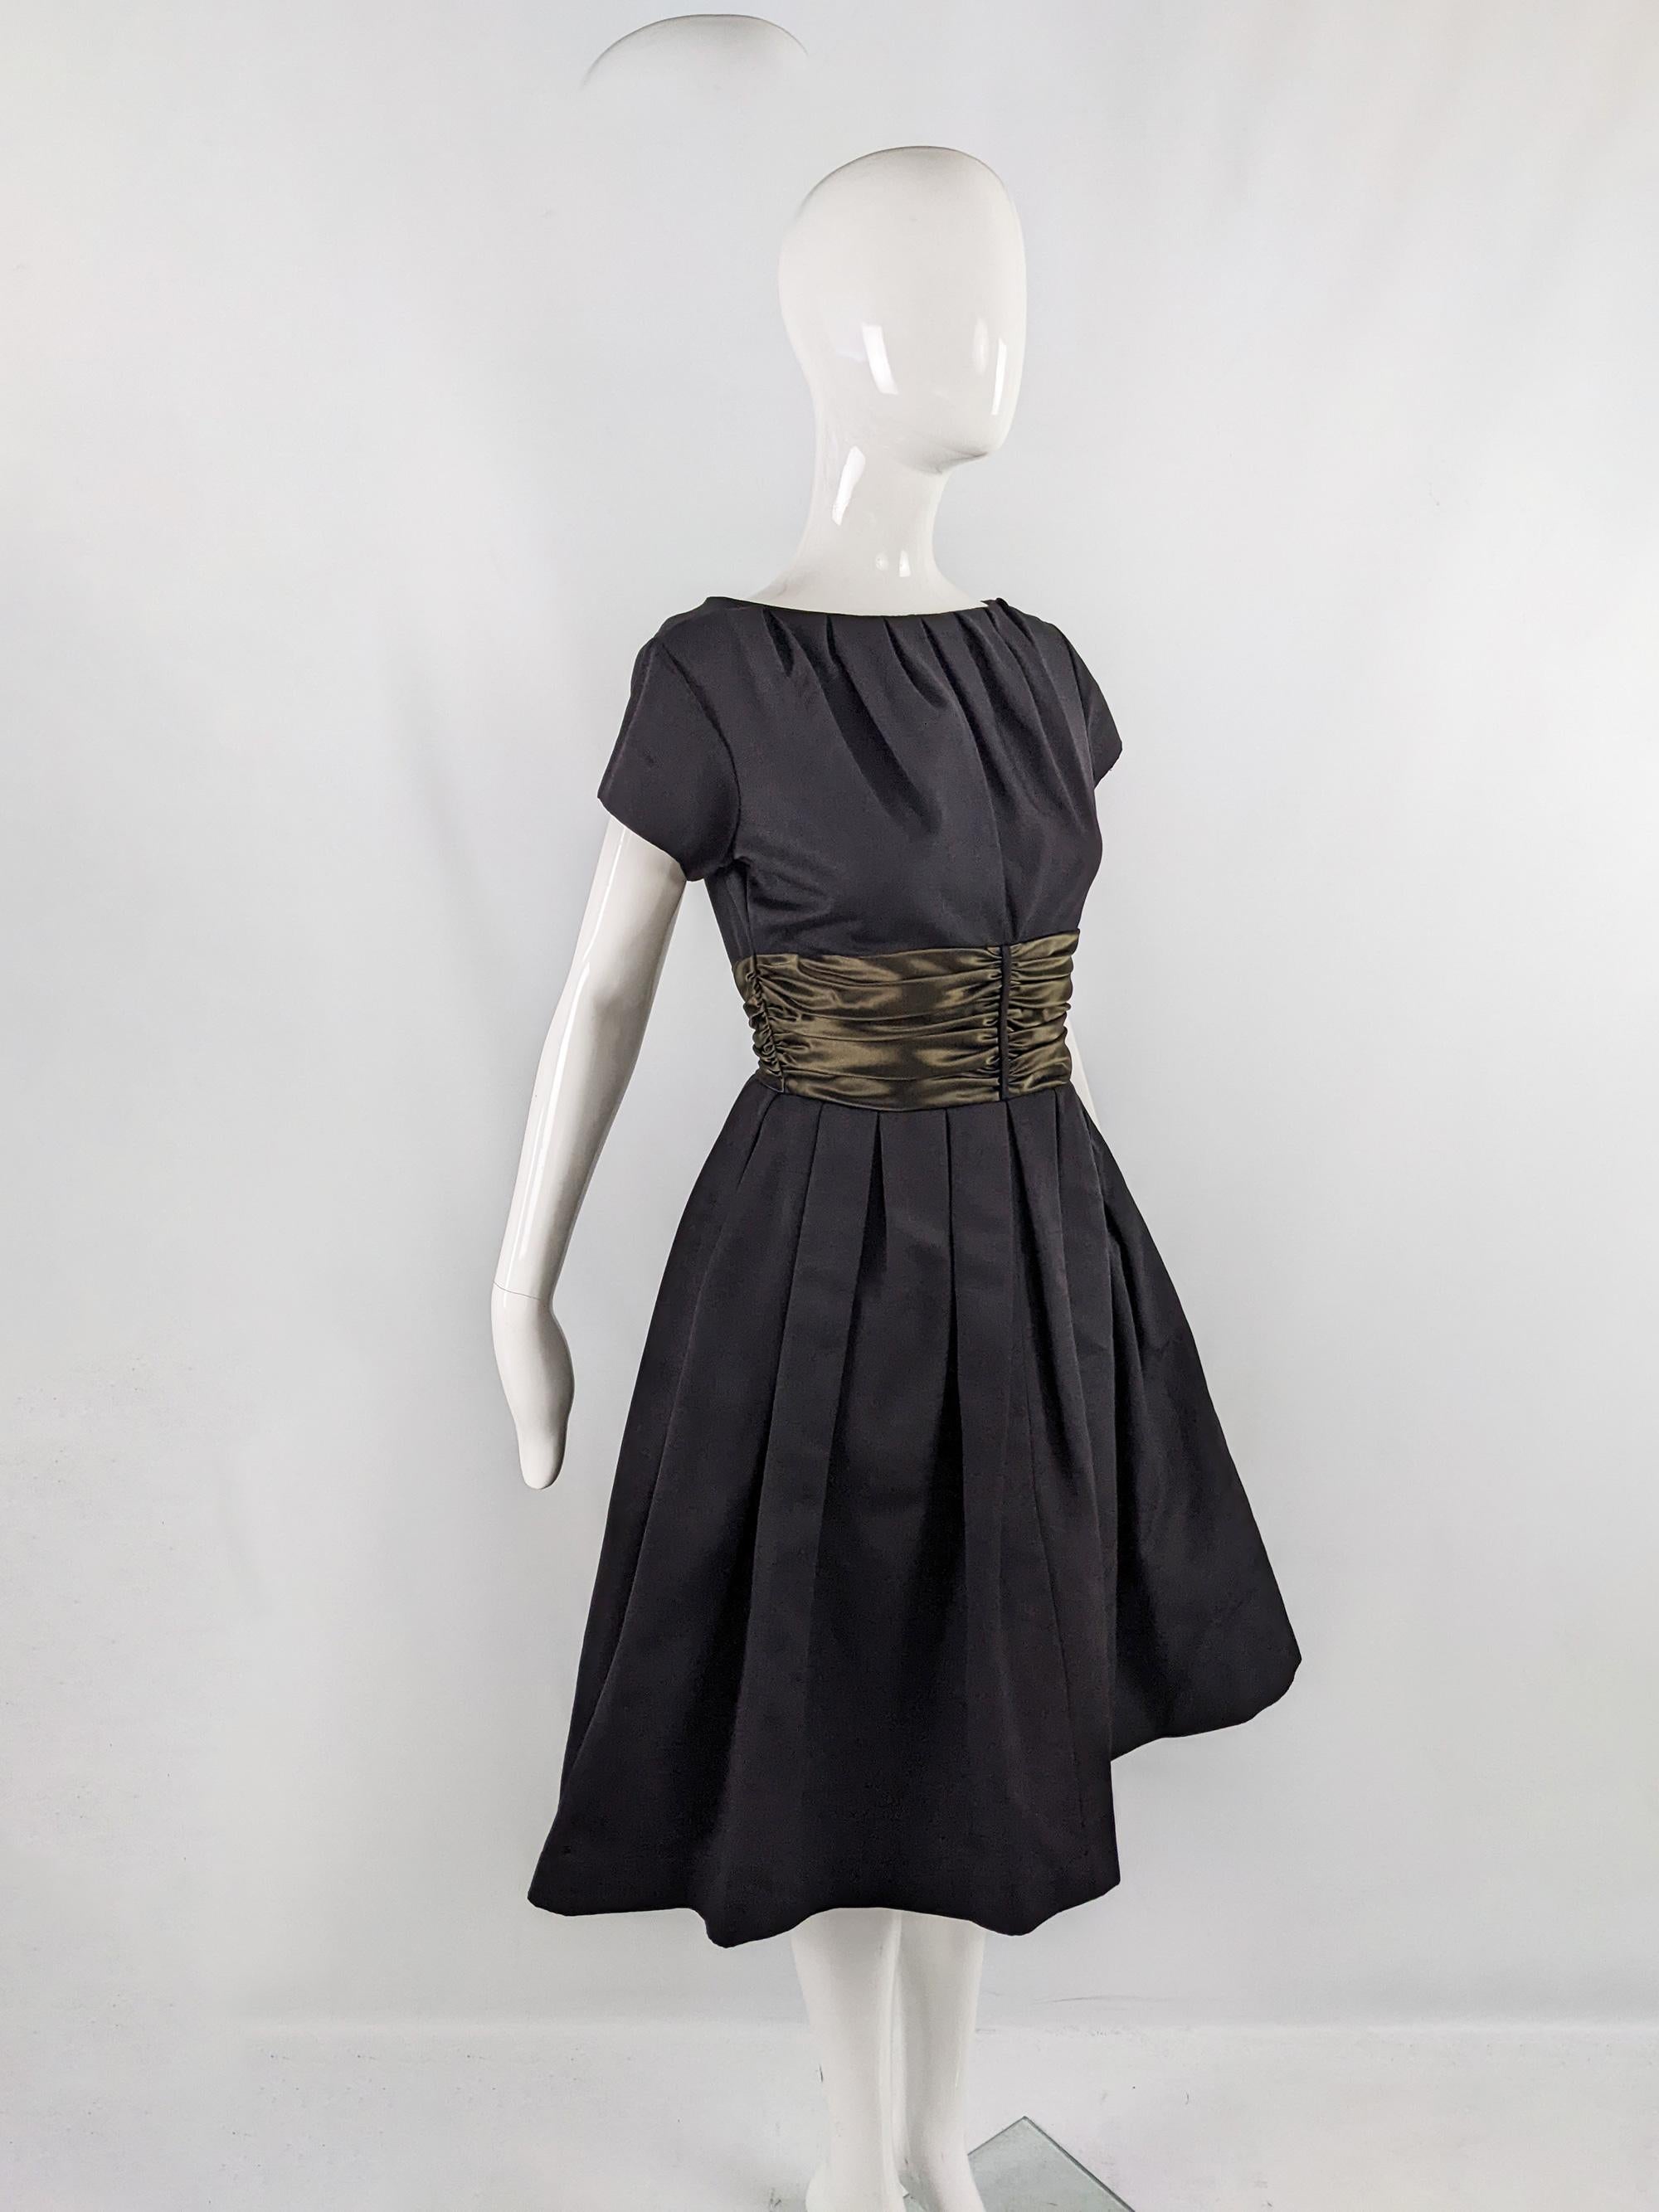 Carven Vintage 1960s Black Faille & Taffeta Cocktail Party Evening Dress 1